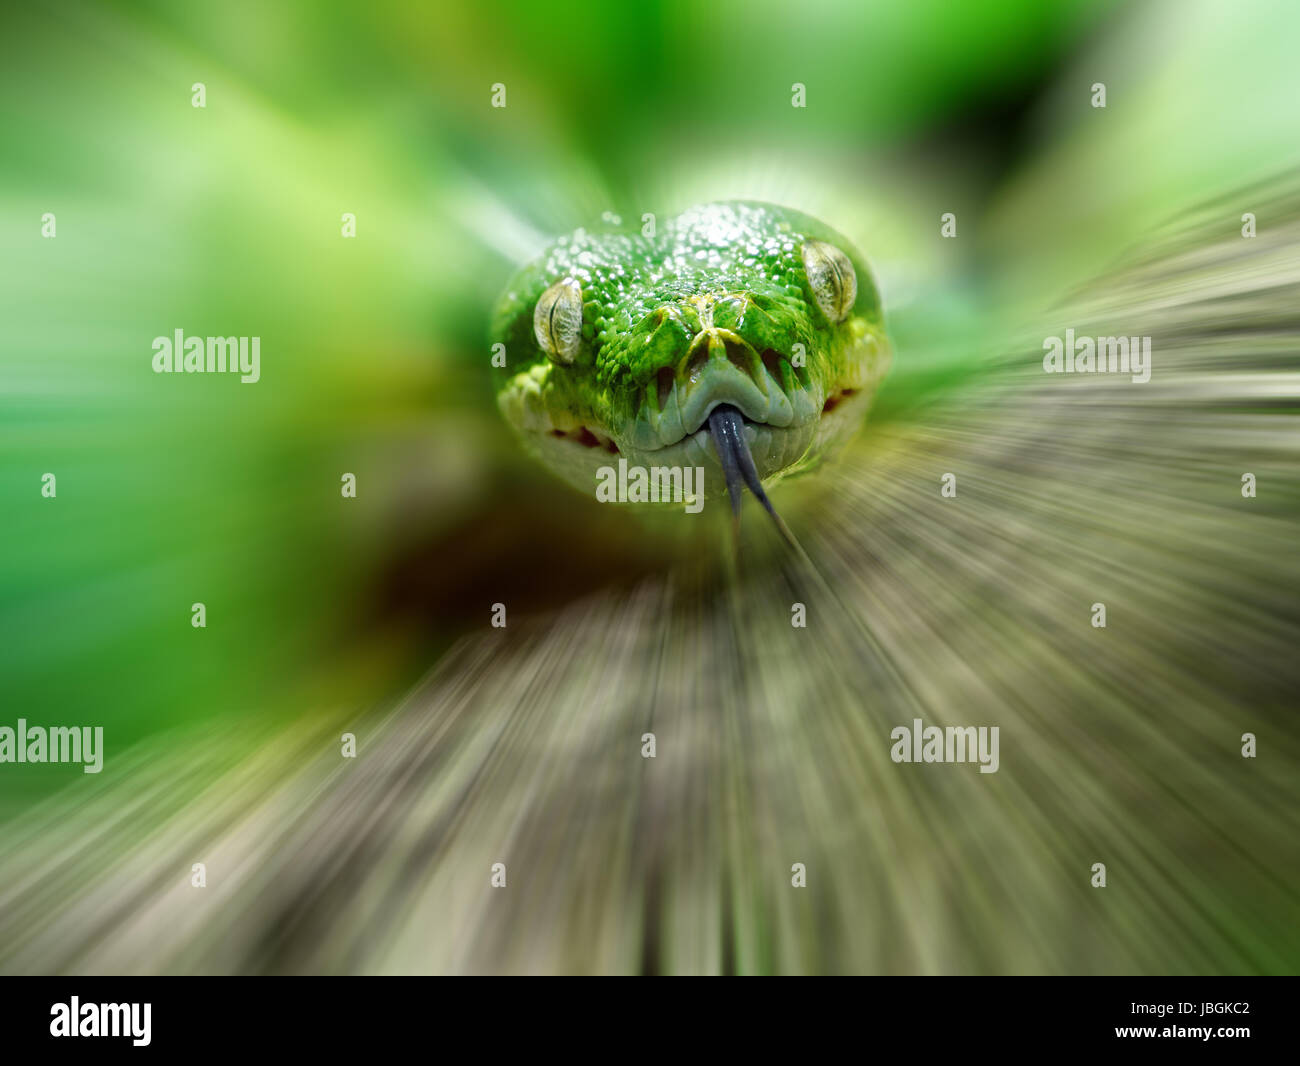 Kopf einer grünen Baumpython, Bewegungs-unscharfer Hintergrund, Stock Photo